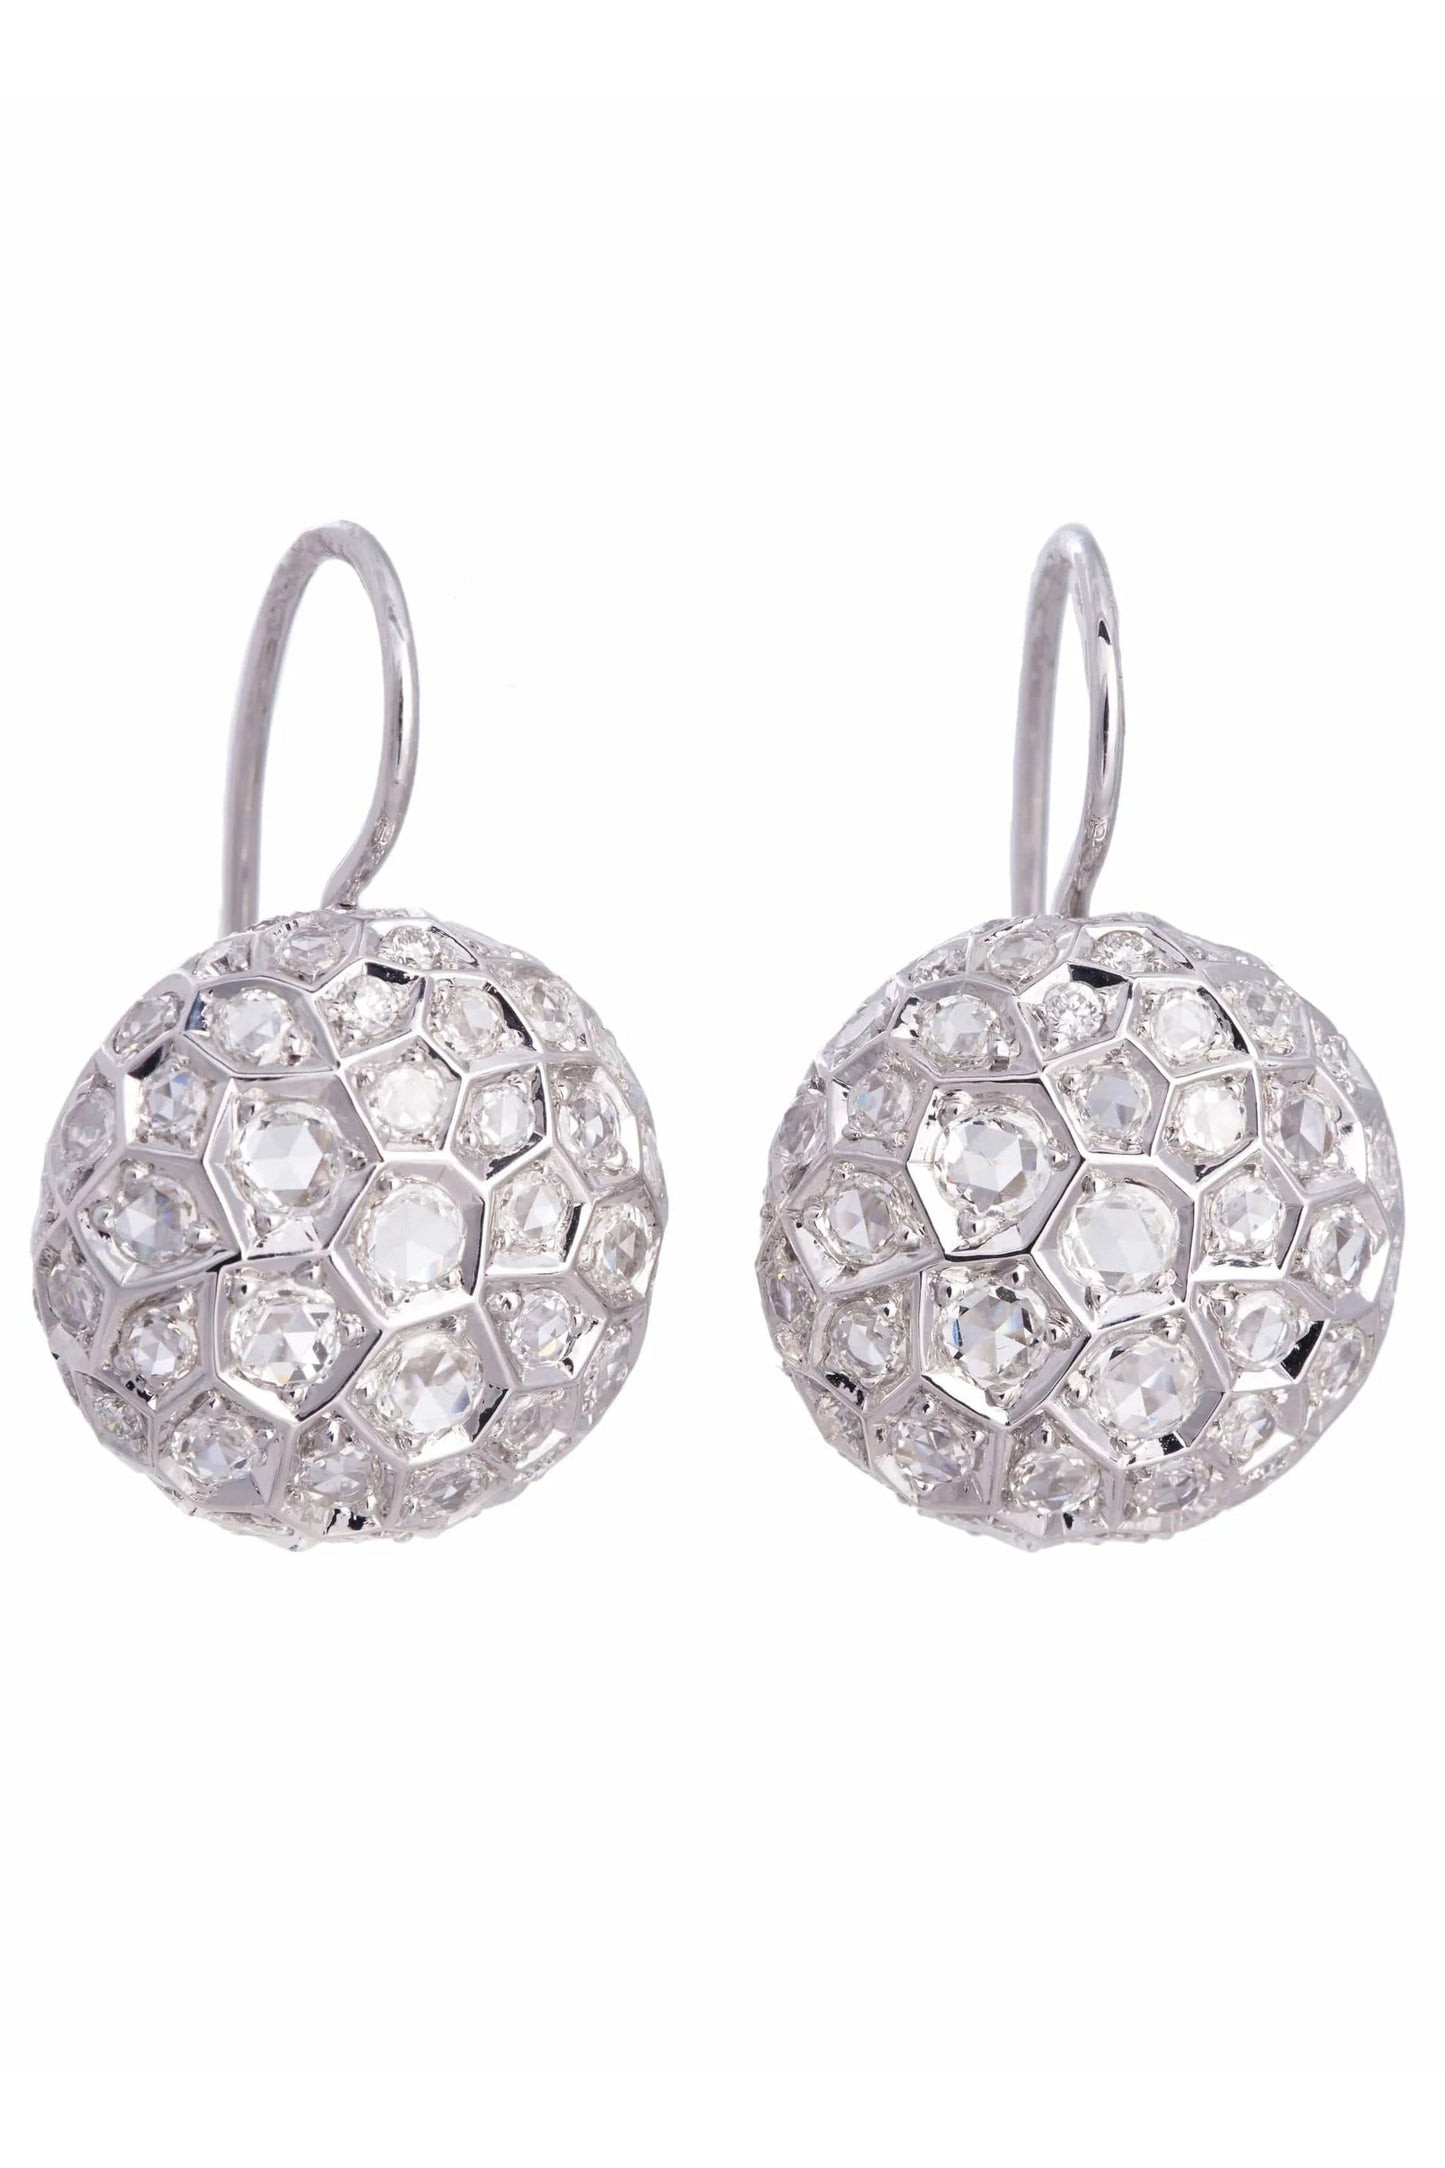 SIDNEY GARBER-Small Diamond Honeycomb Earrings-WHITE GOLD